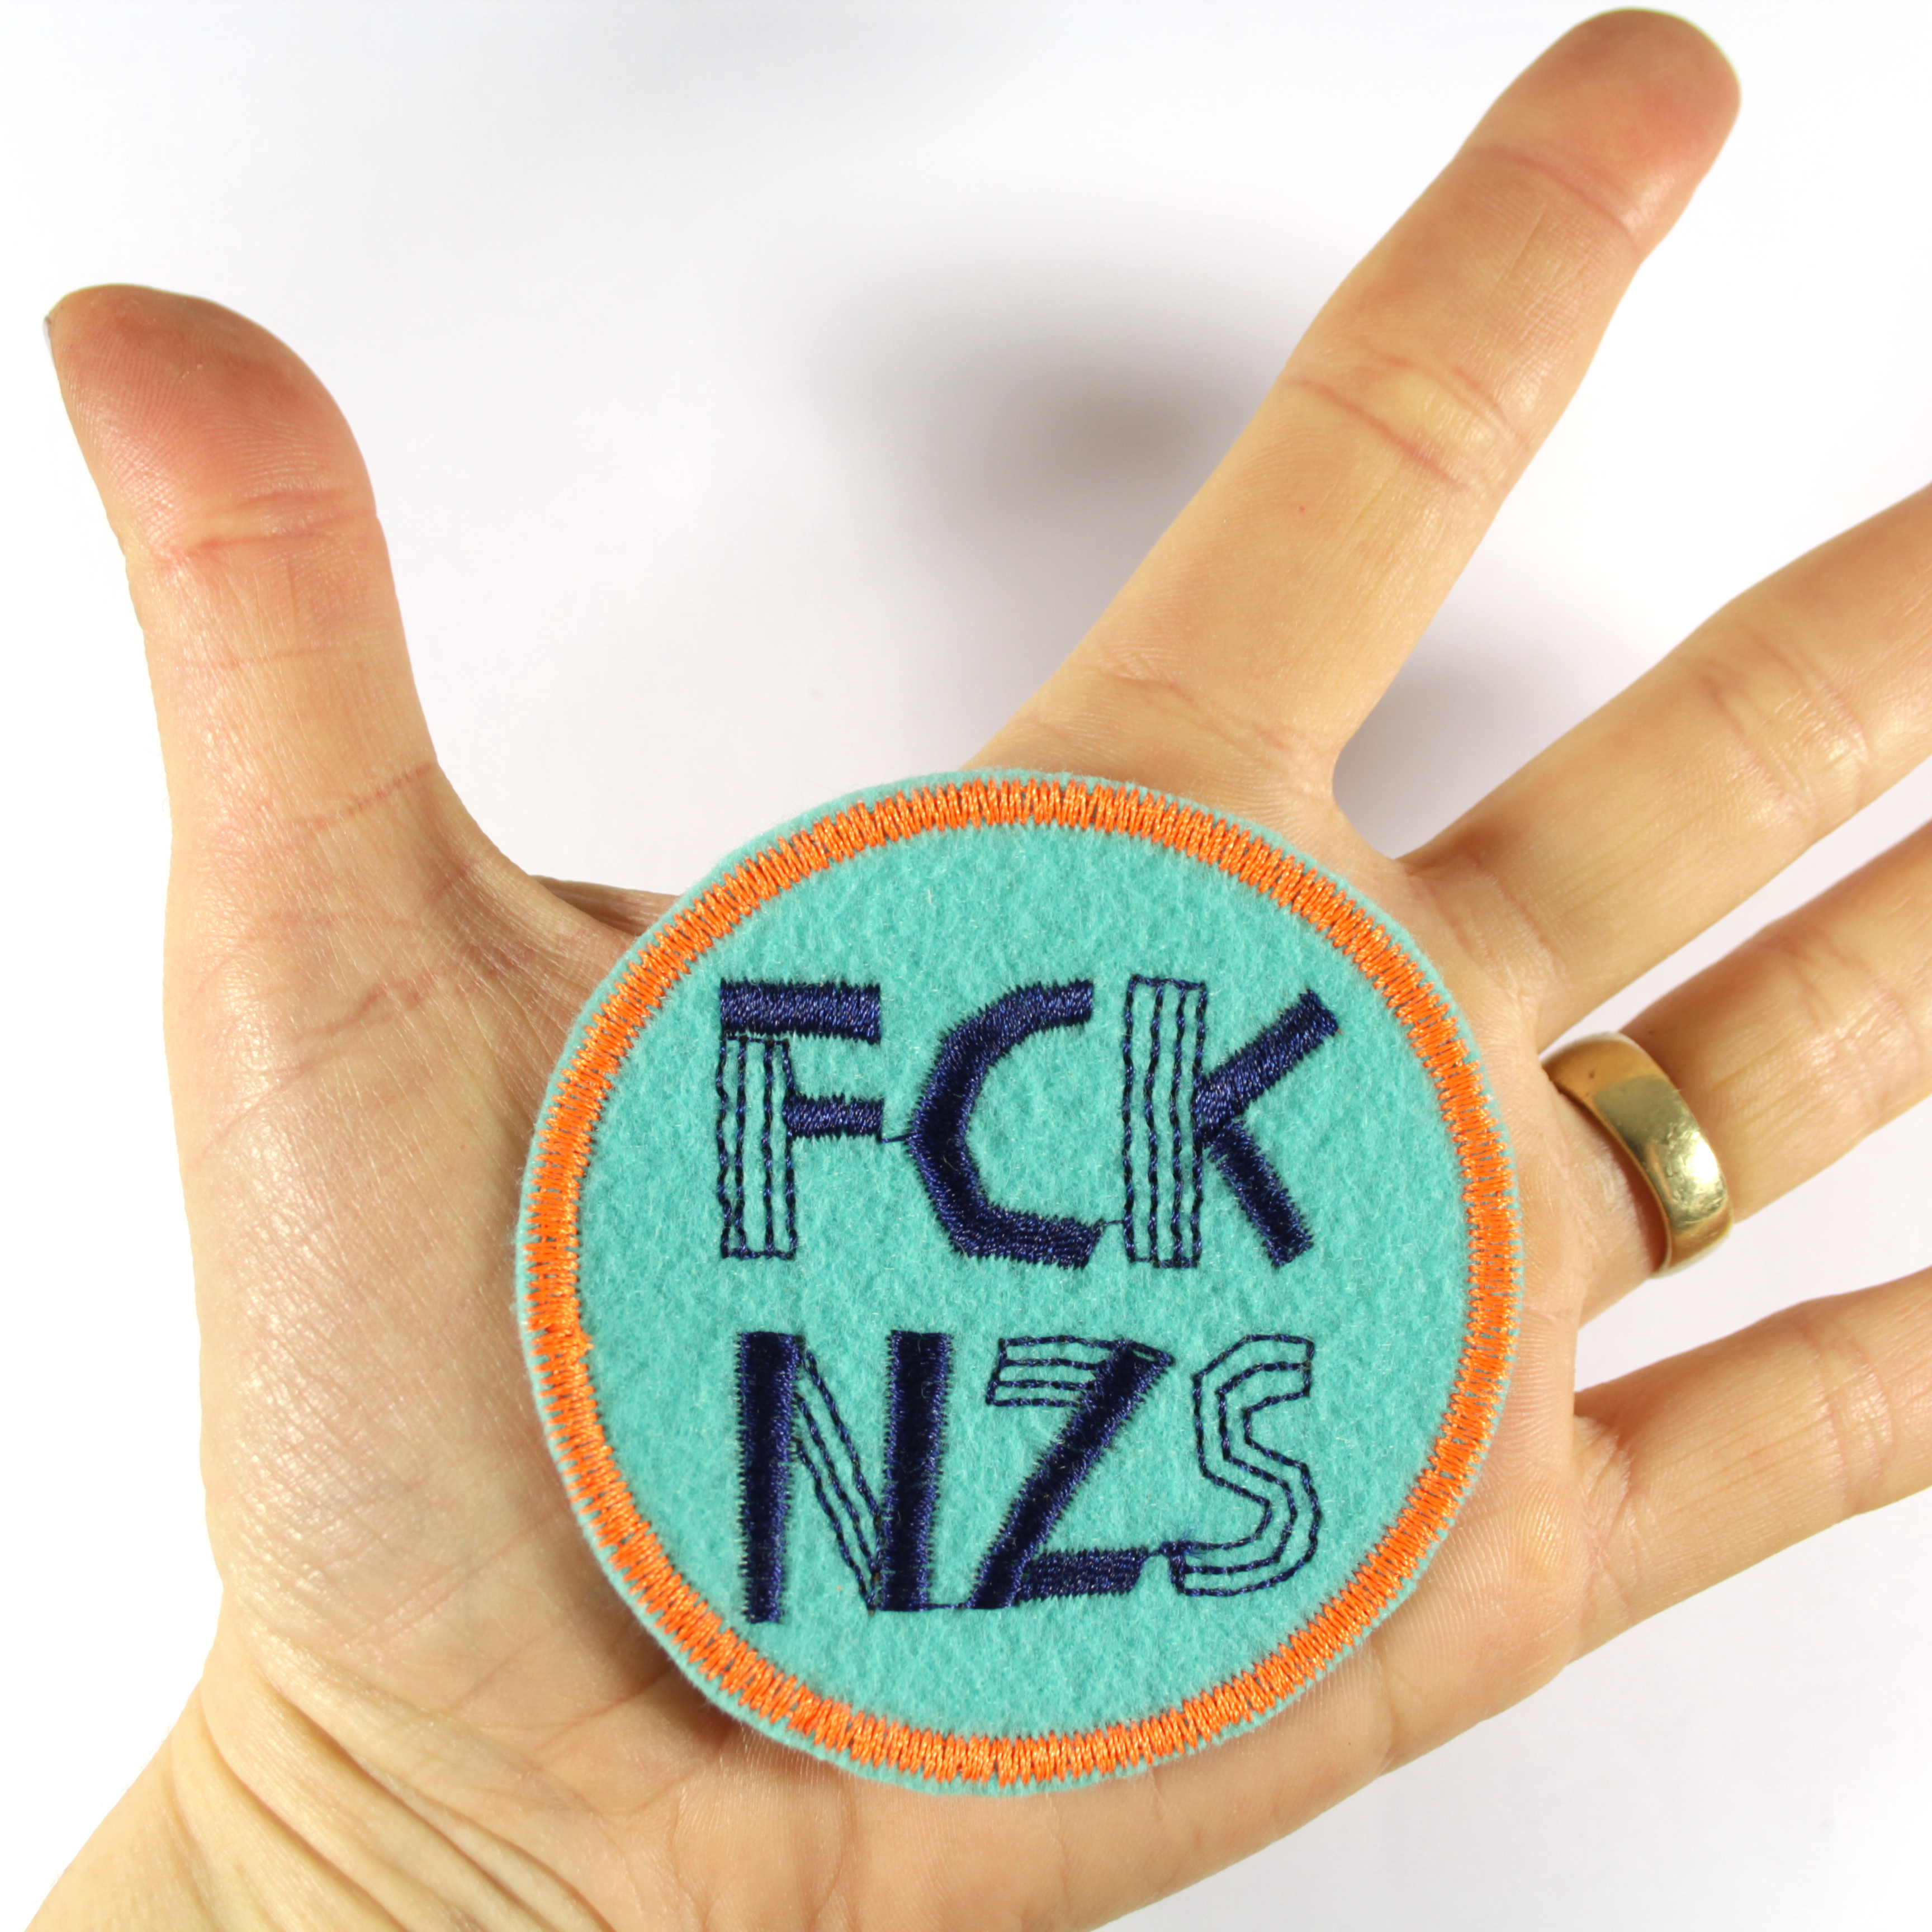 FCK NZS Patches zum aufbügeln - Das bunte Statement! türkis neonorange